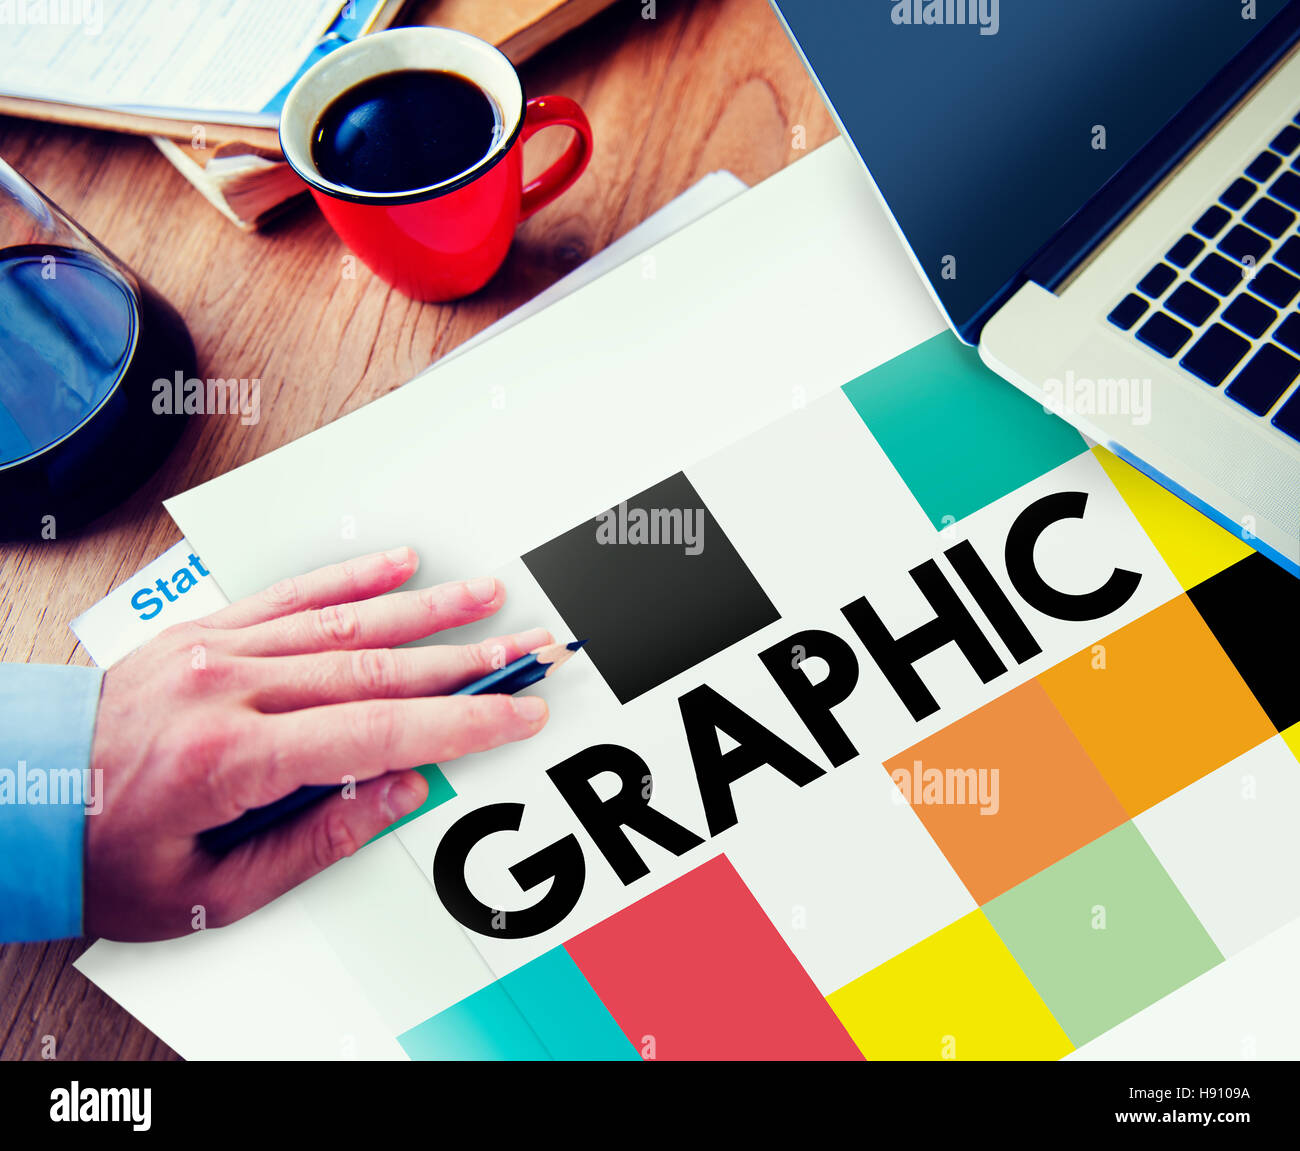 Graphic Creative Design Visual Art Concept Stock Photo